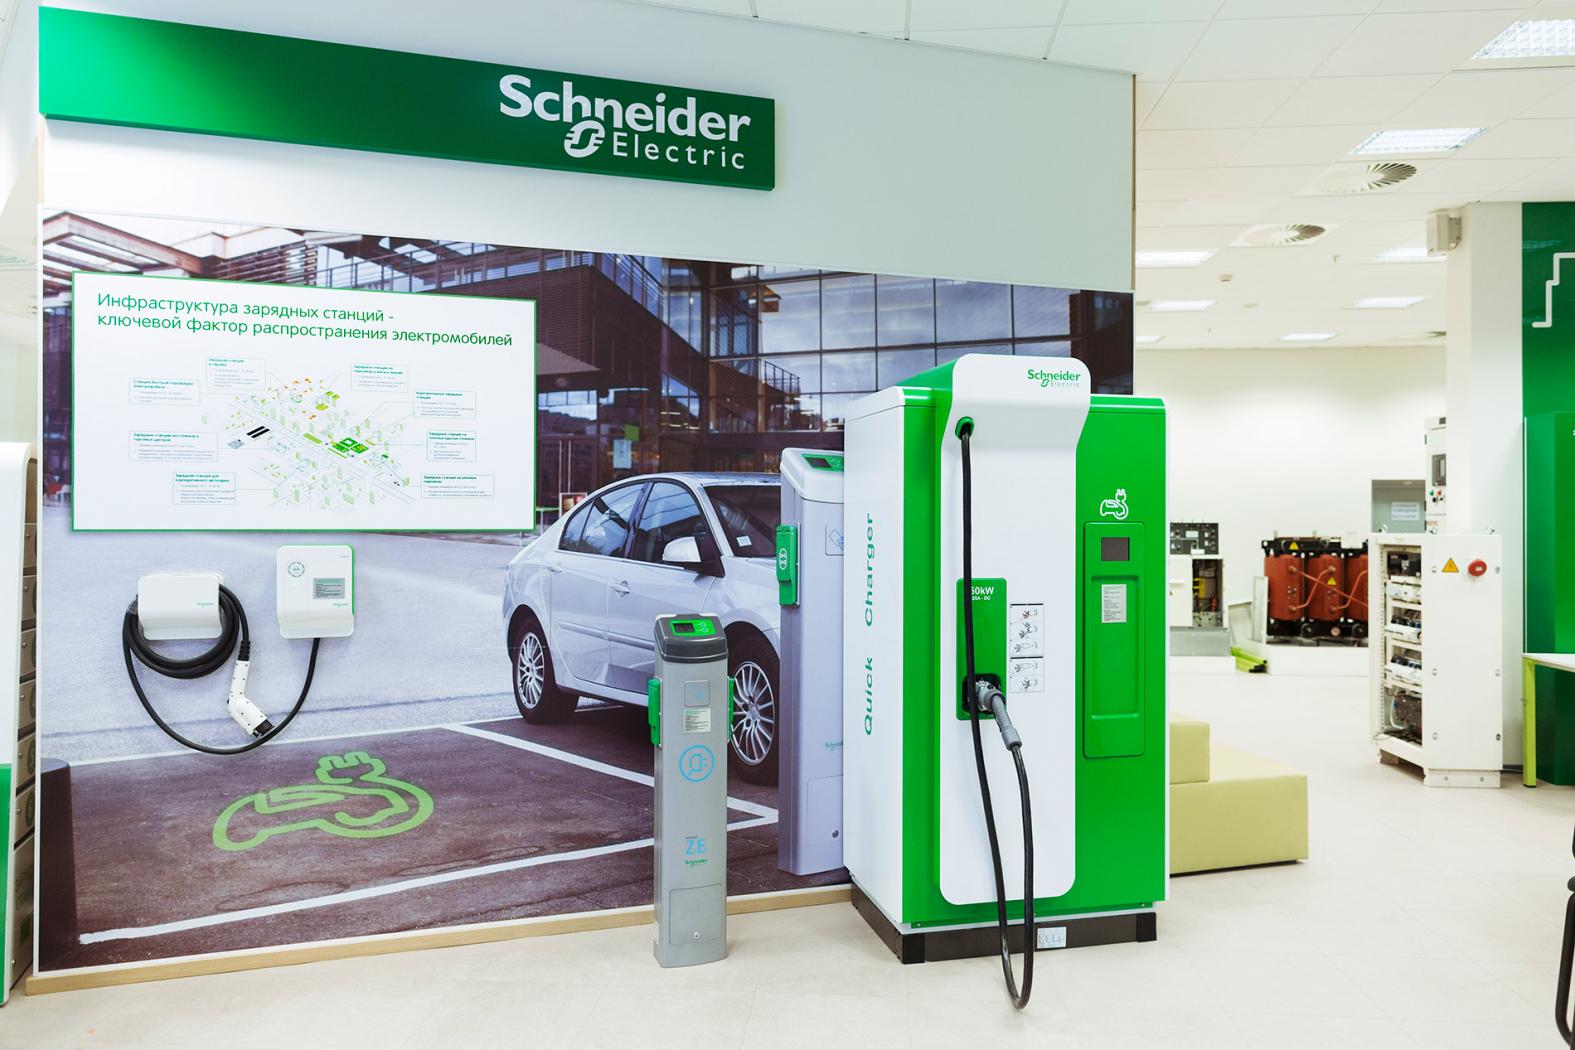 Компания намерена сыграть важную роль в распространении электромобилей. Schneider Electric уже сегодня предлагает энергоэффективные решения для зарядных станций.